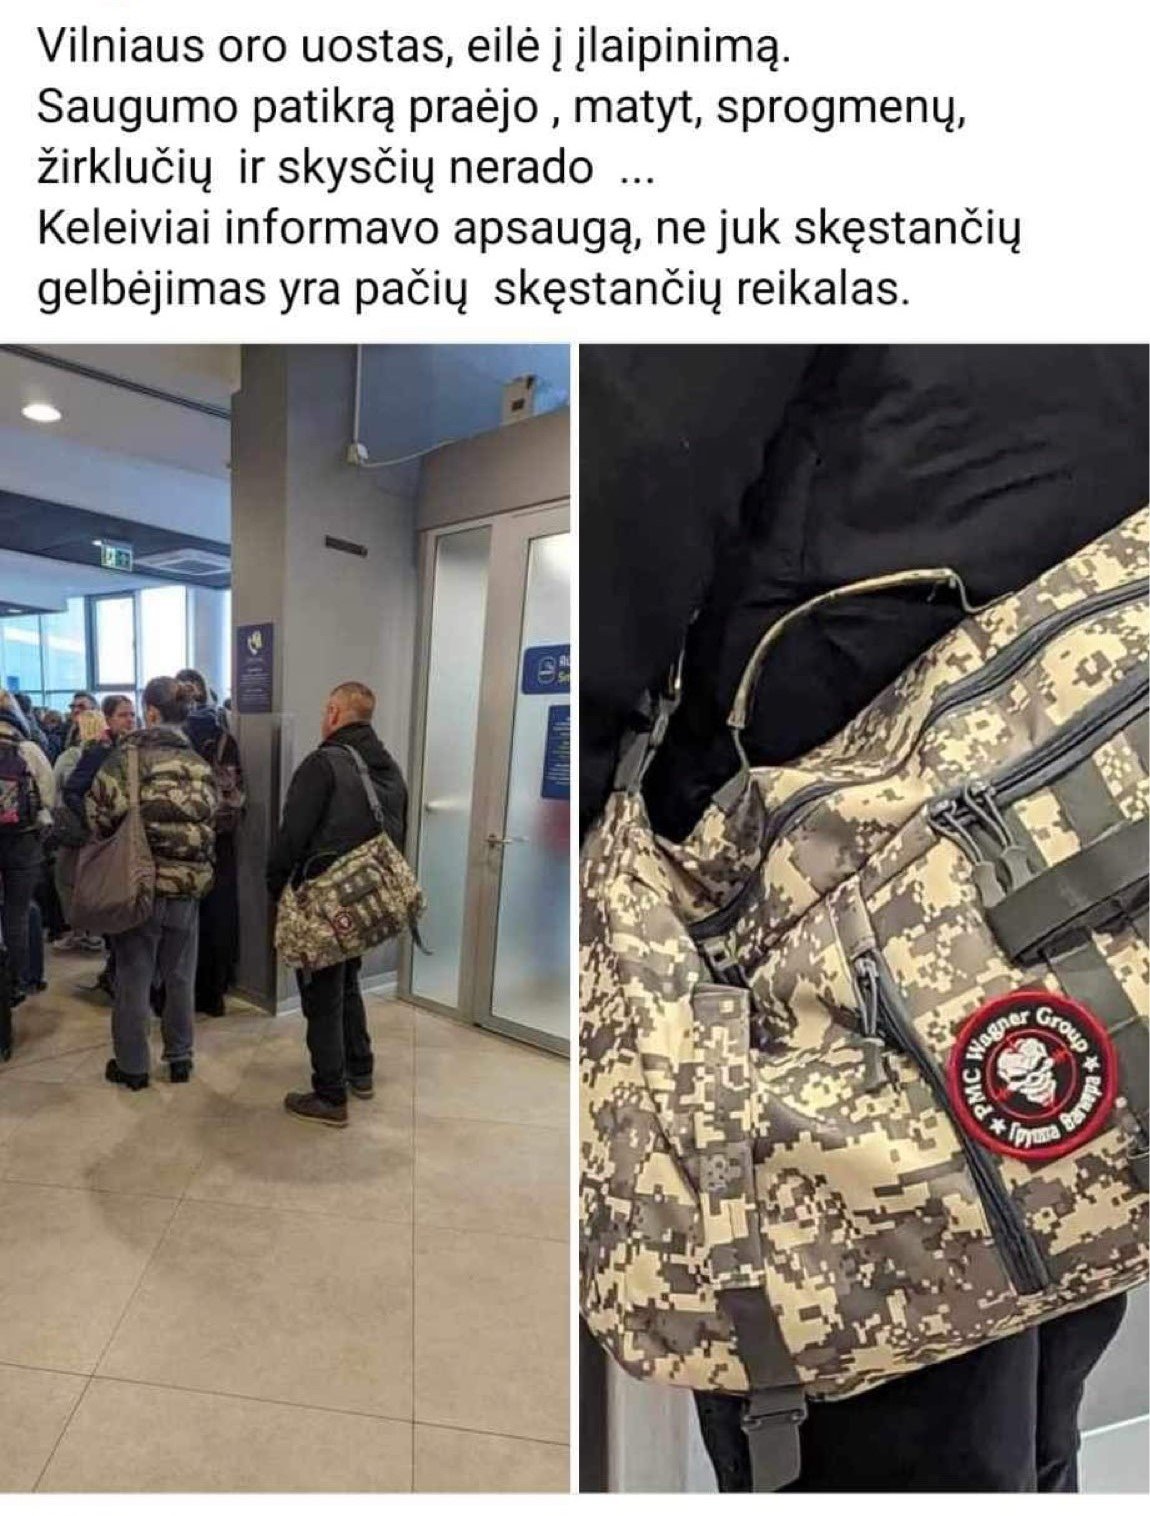 В Вильнюсском аэропорту был замечен гражданин с символикой ЧВК 